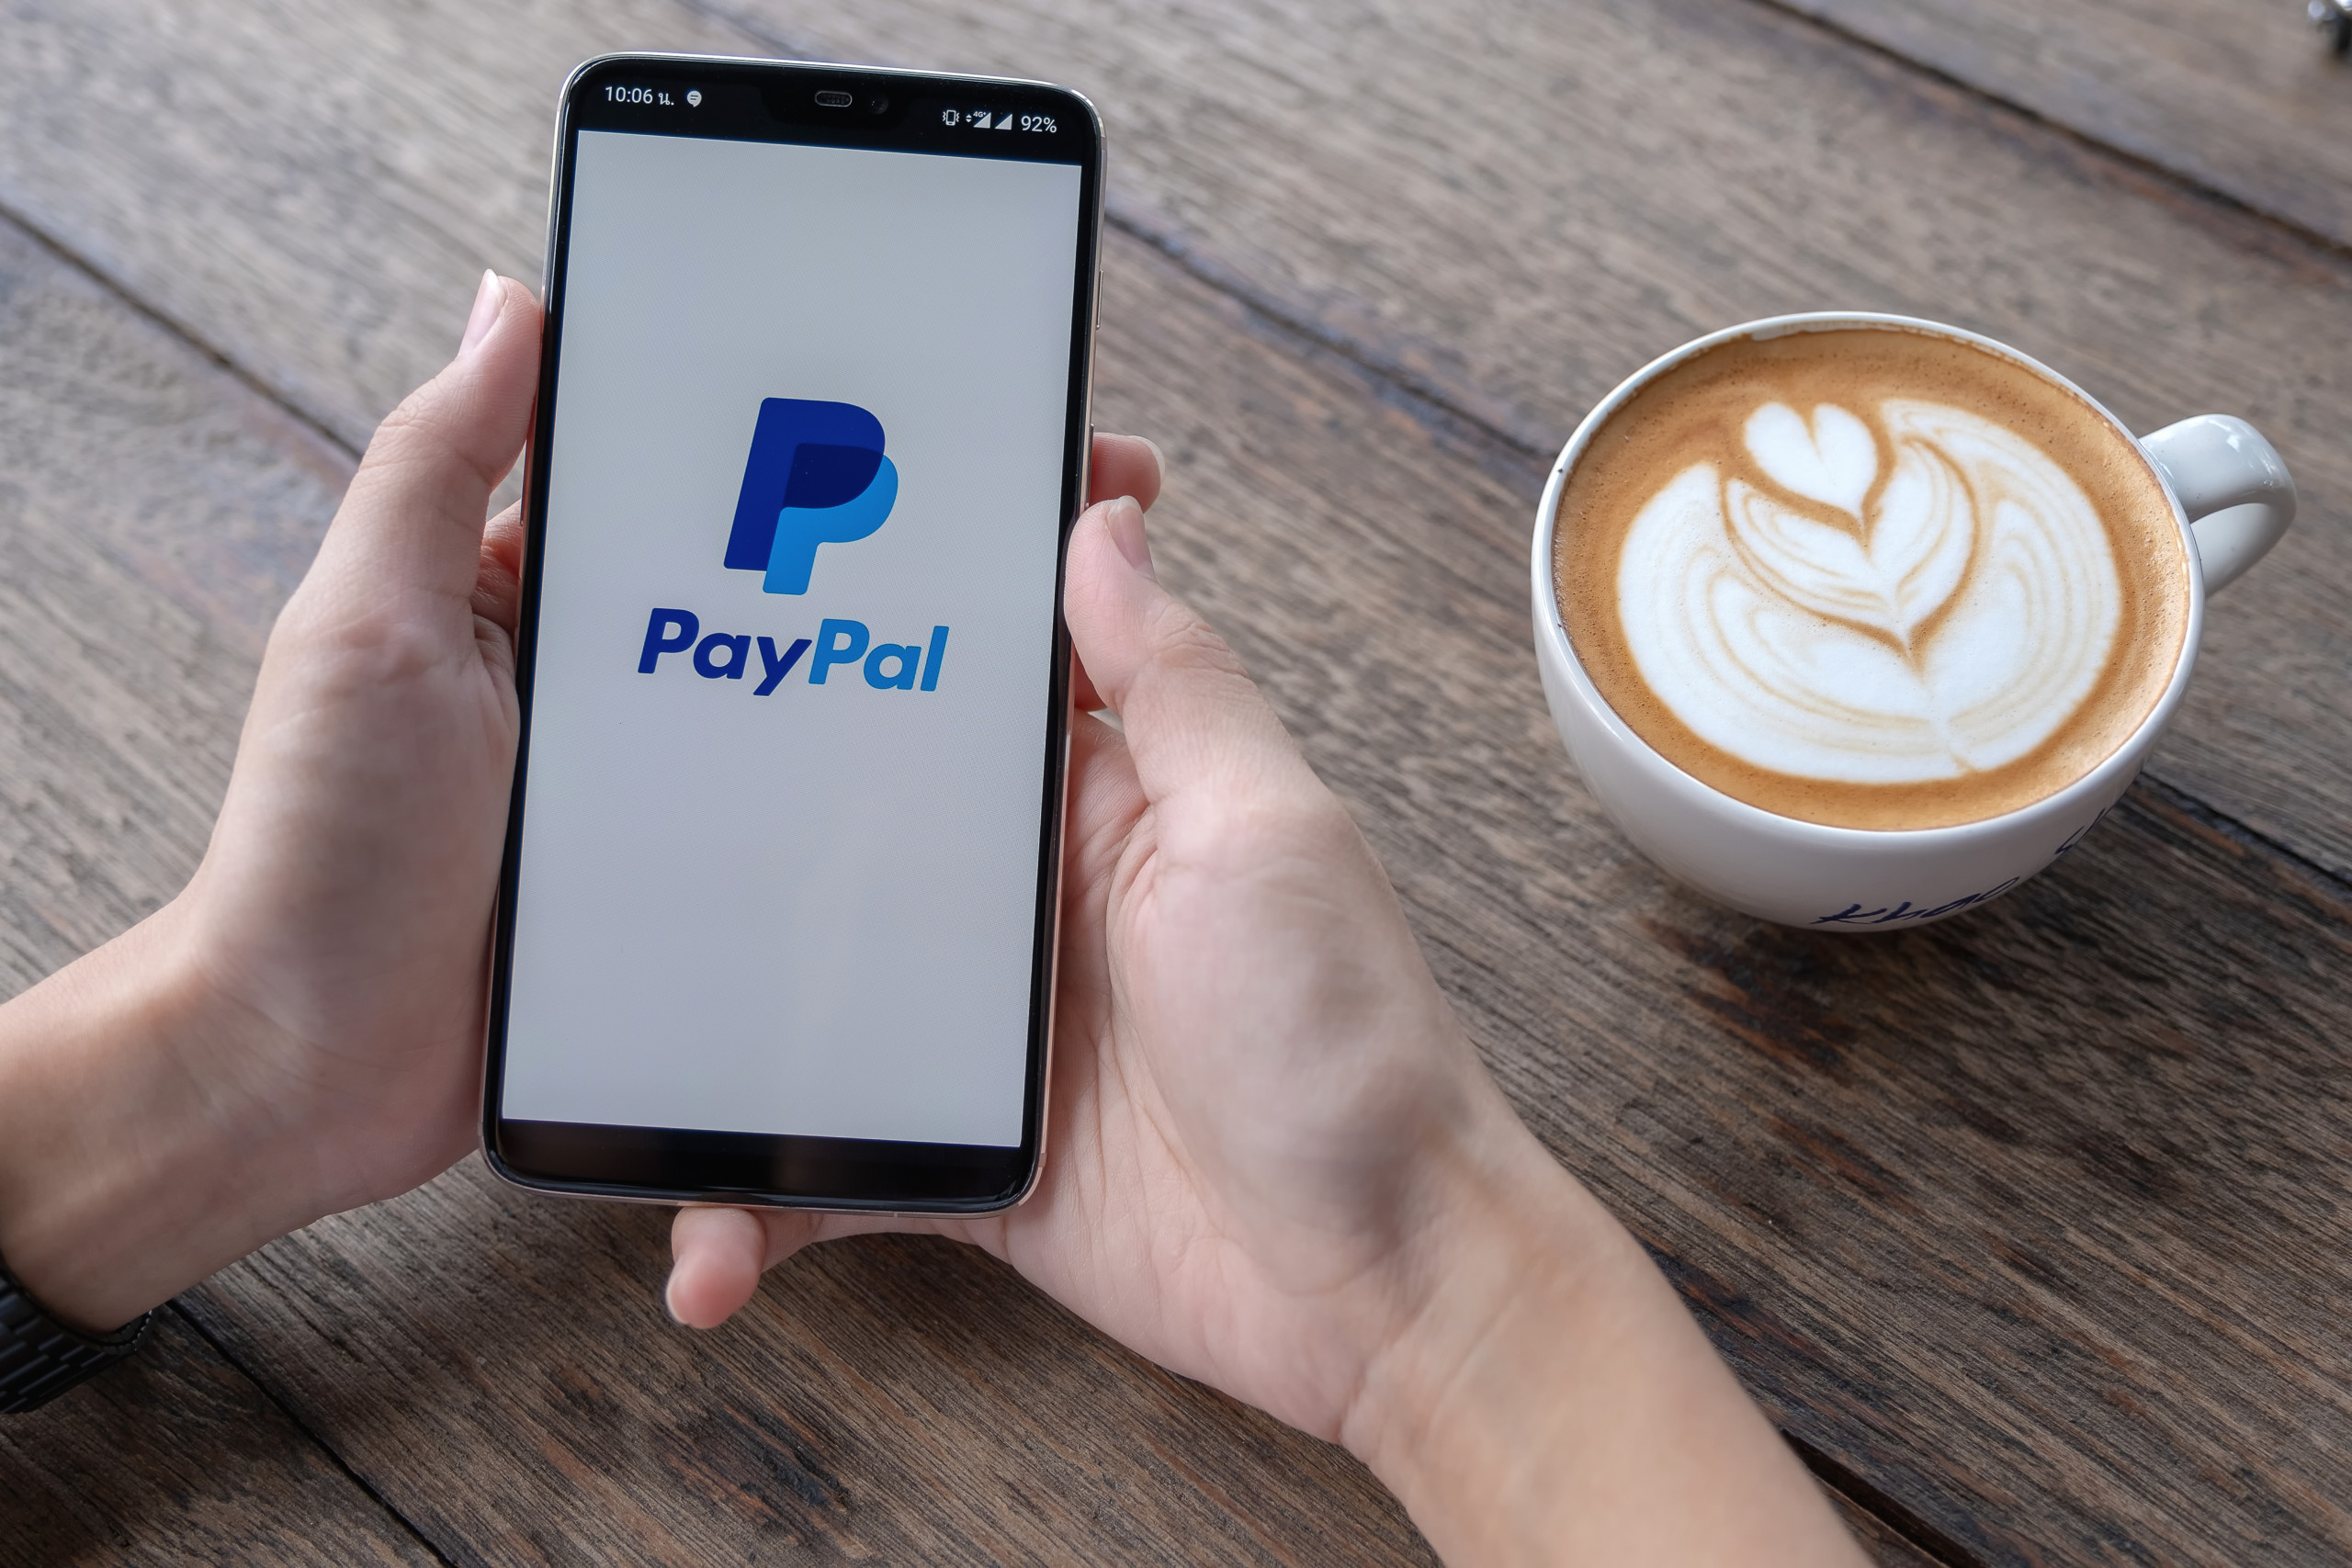 PayPal nach Gewinnrückgang mit milliardenschwerem Aktienrückkaufprogramm